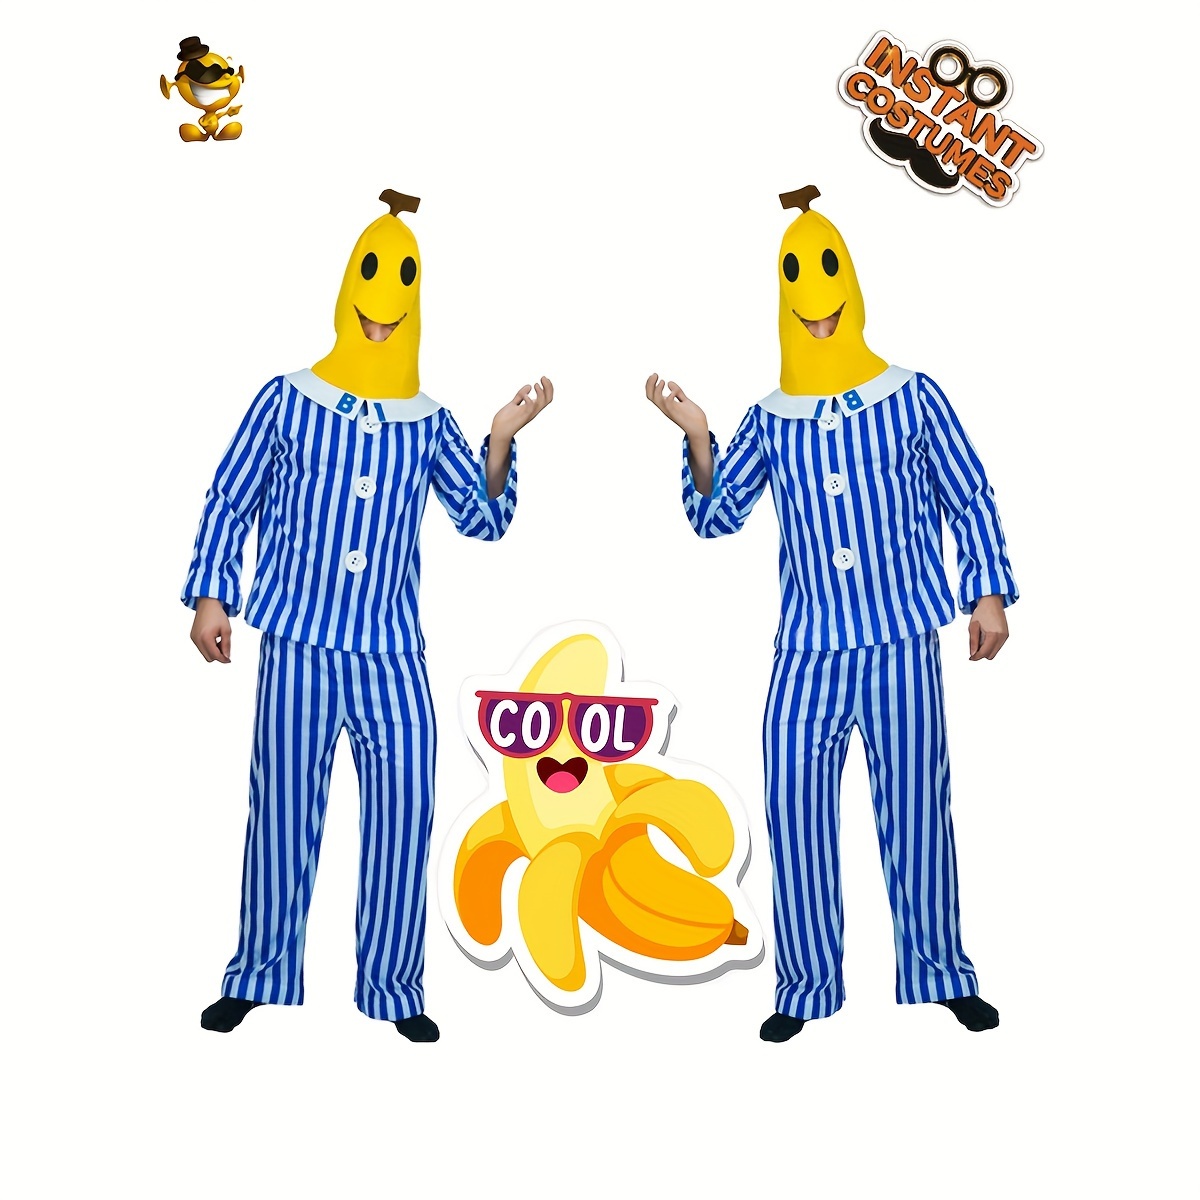 bananas in pajamas costume